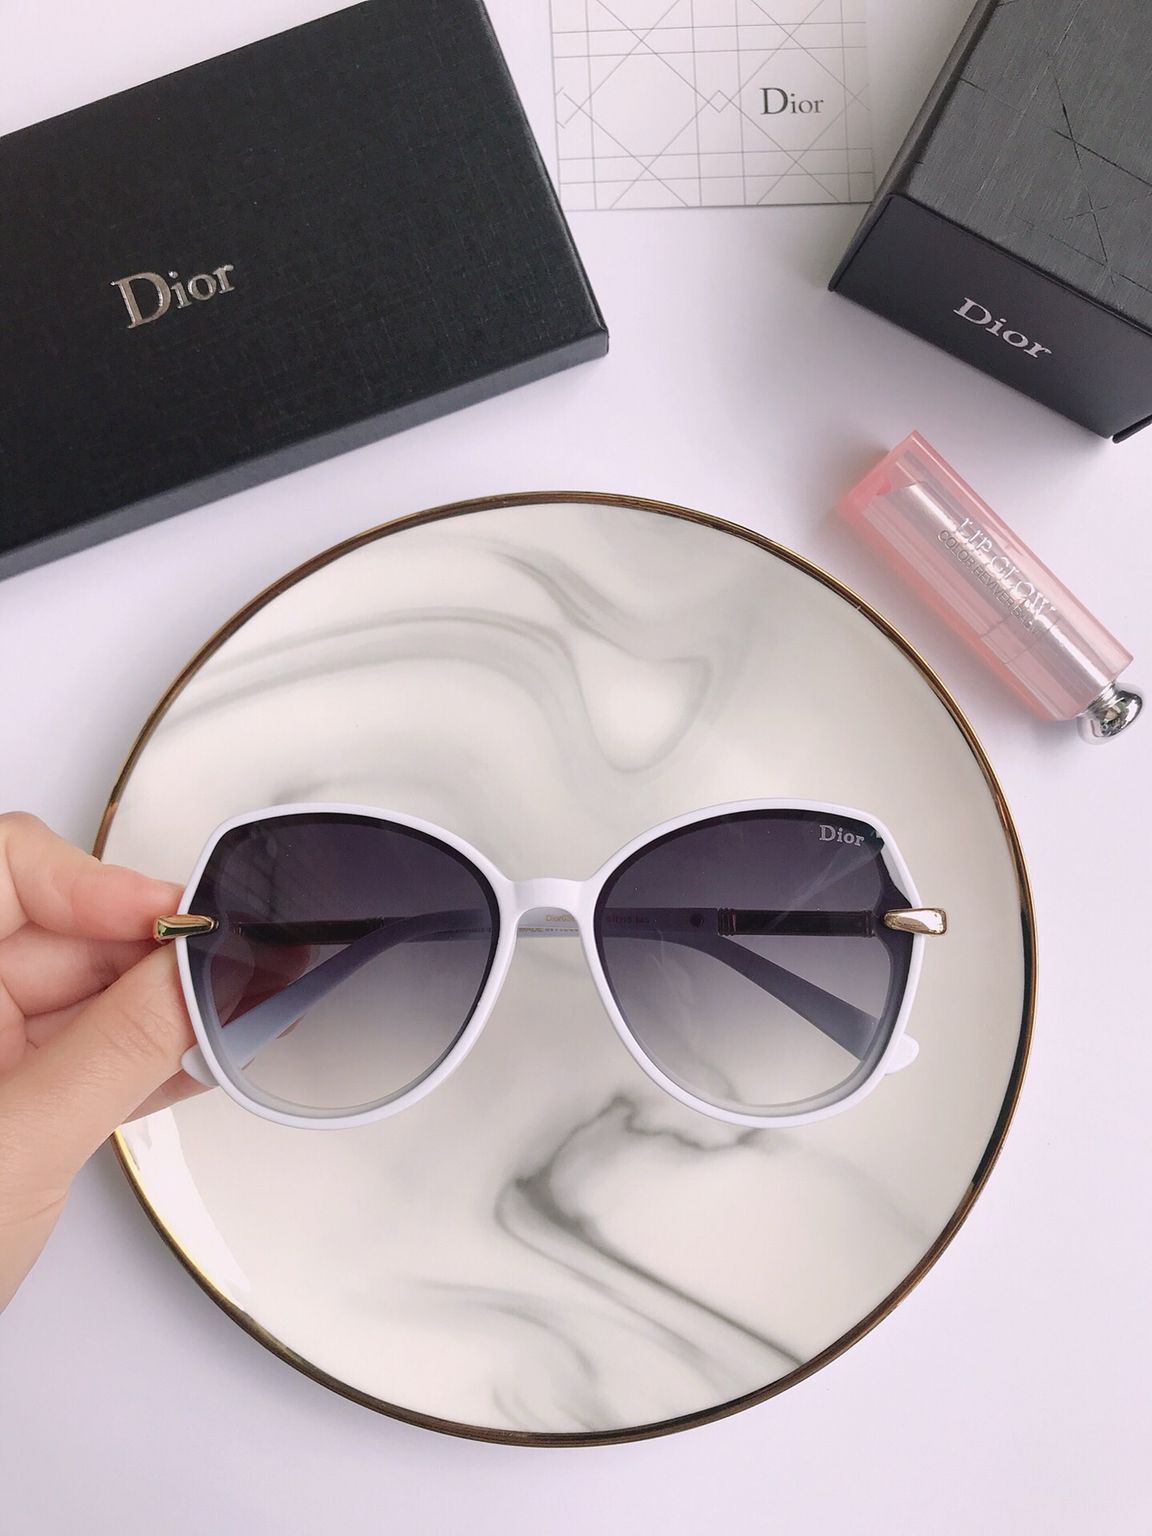 复刻迪奥男女款眼镜 复刻迪奥眼镜 Dior迪奥时尚板材圆框男女通用太阳眼镜 